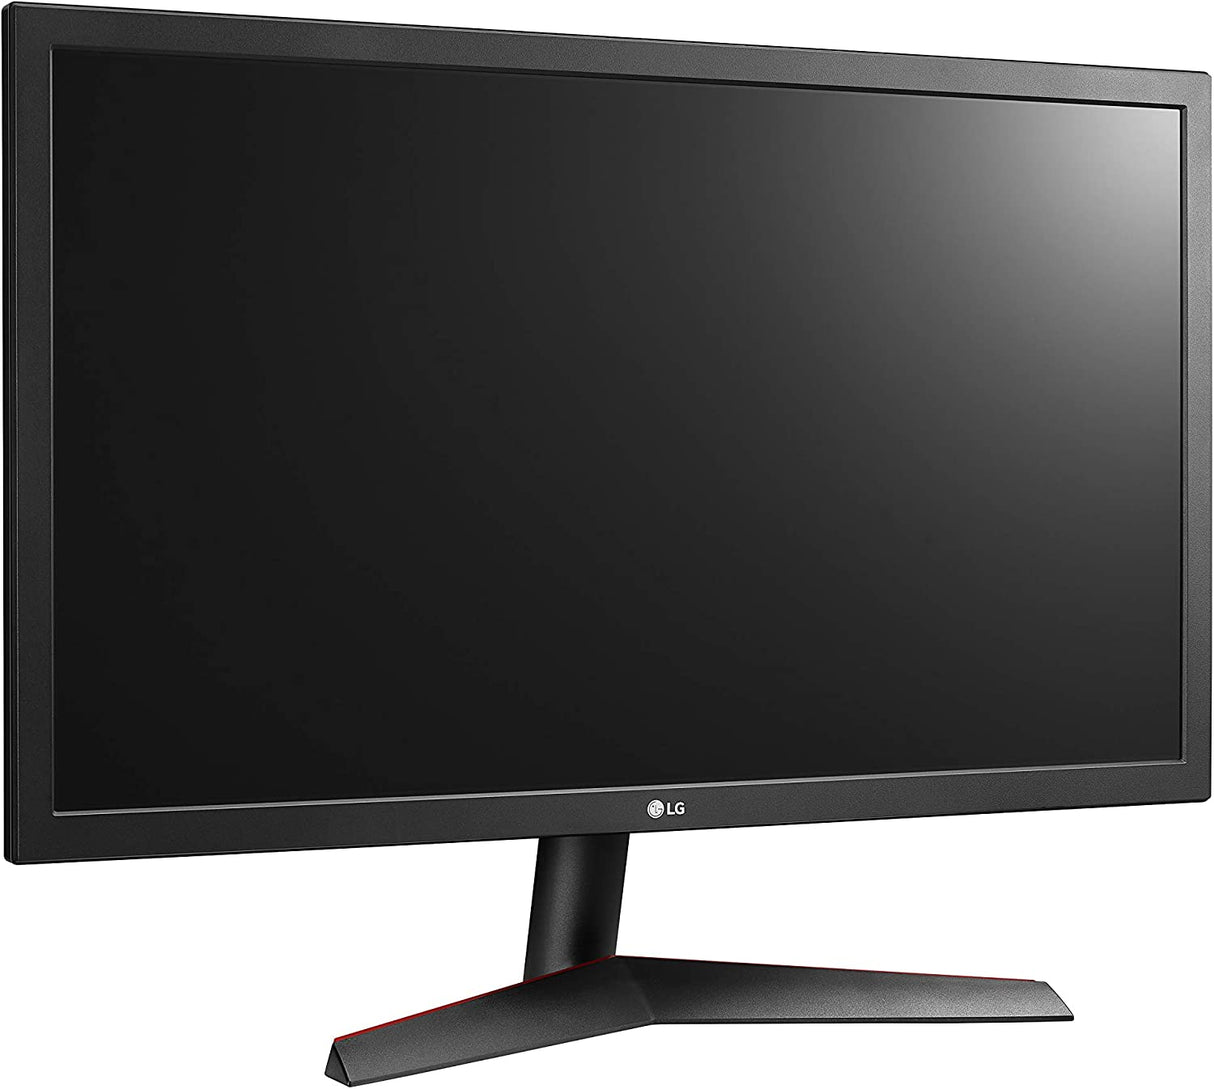 LG UltraGear FHD 24-Inch Gaming Monitor 24GL600F-B, TN with AMD FreeSync, 144Hz, Black 24 inch 144 Hz